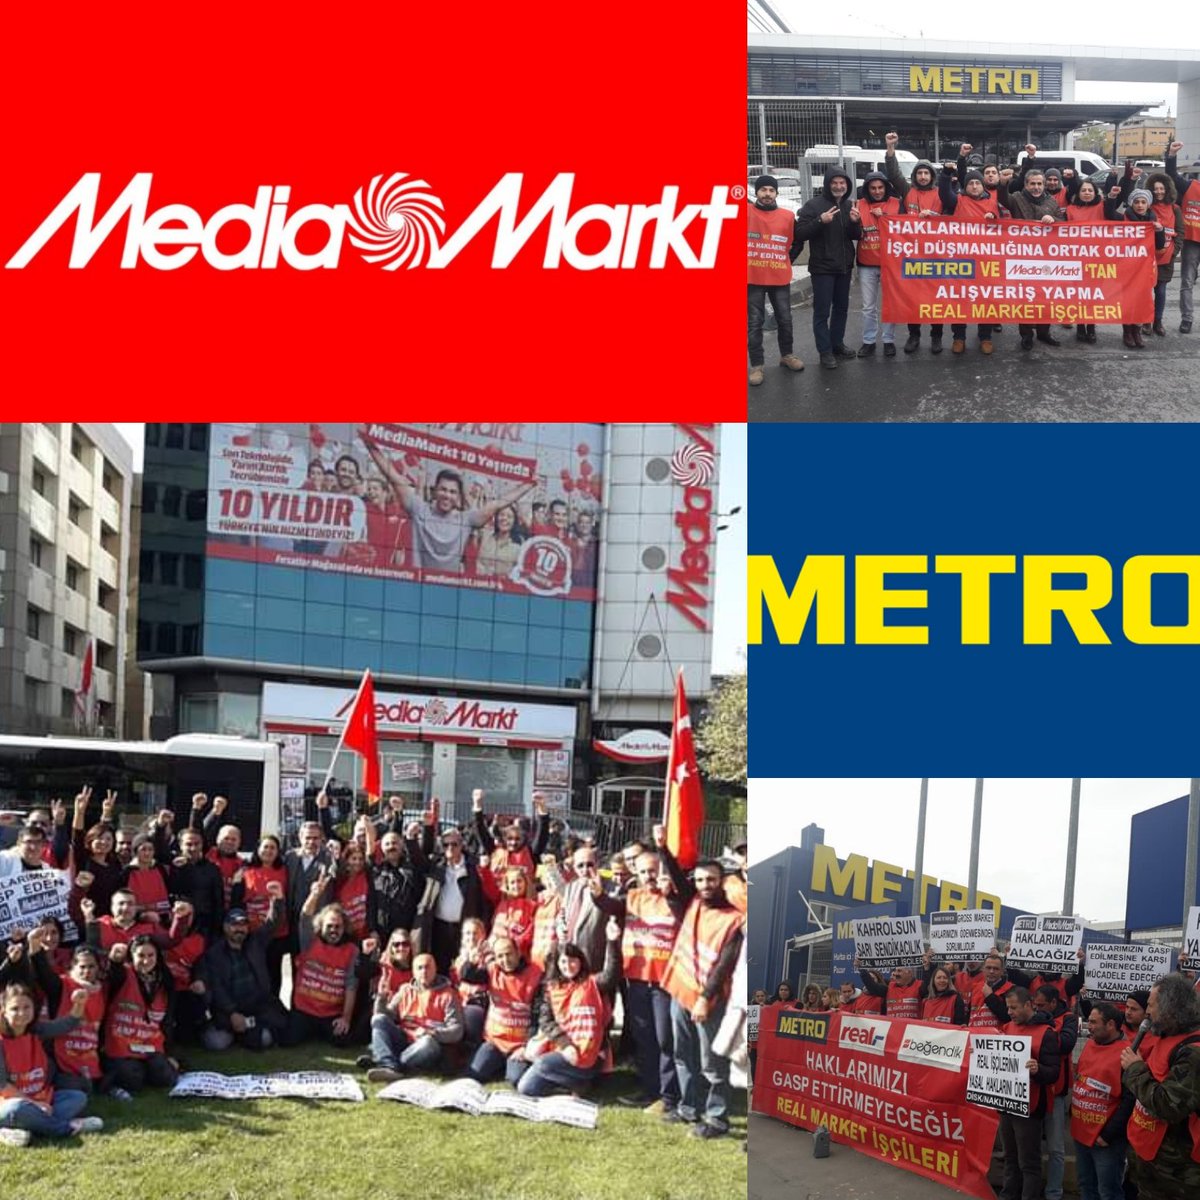 Metro'ya Girme Zulme Ortak Olma #realişçilerikazanacak  #MetroVeMediaMarktBoykot